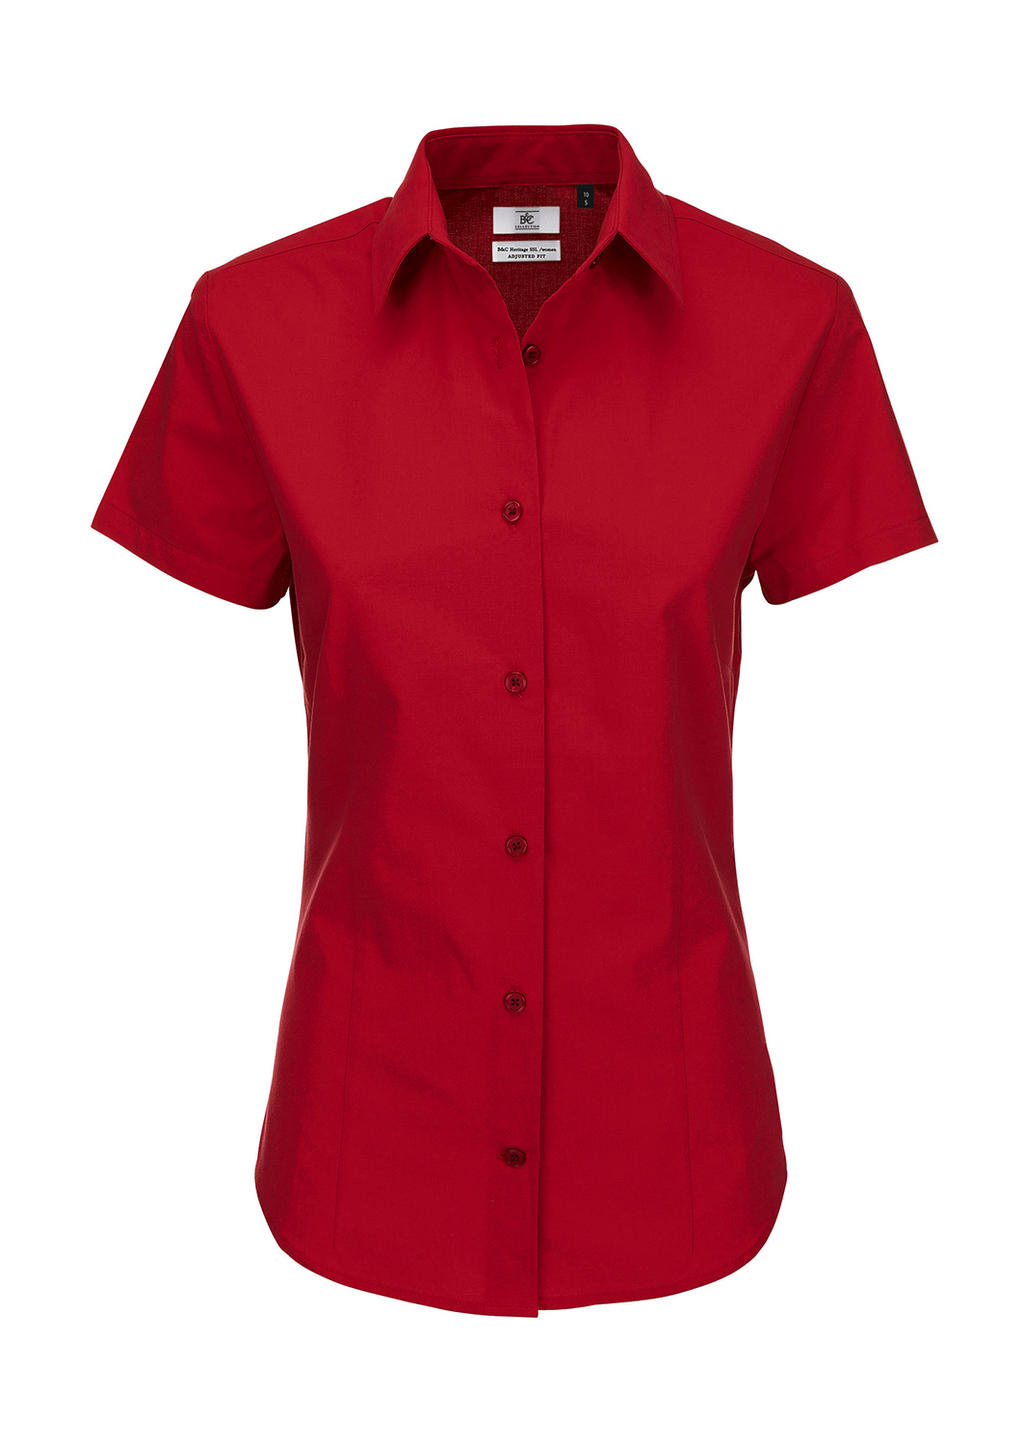  Ladies Heritage Poplin Shirt - SWP44 in Farbe Deep Red